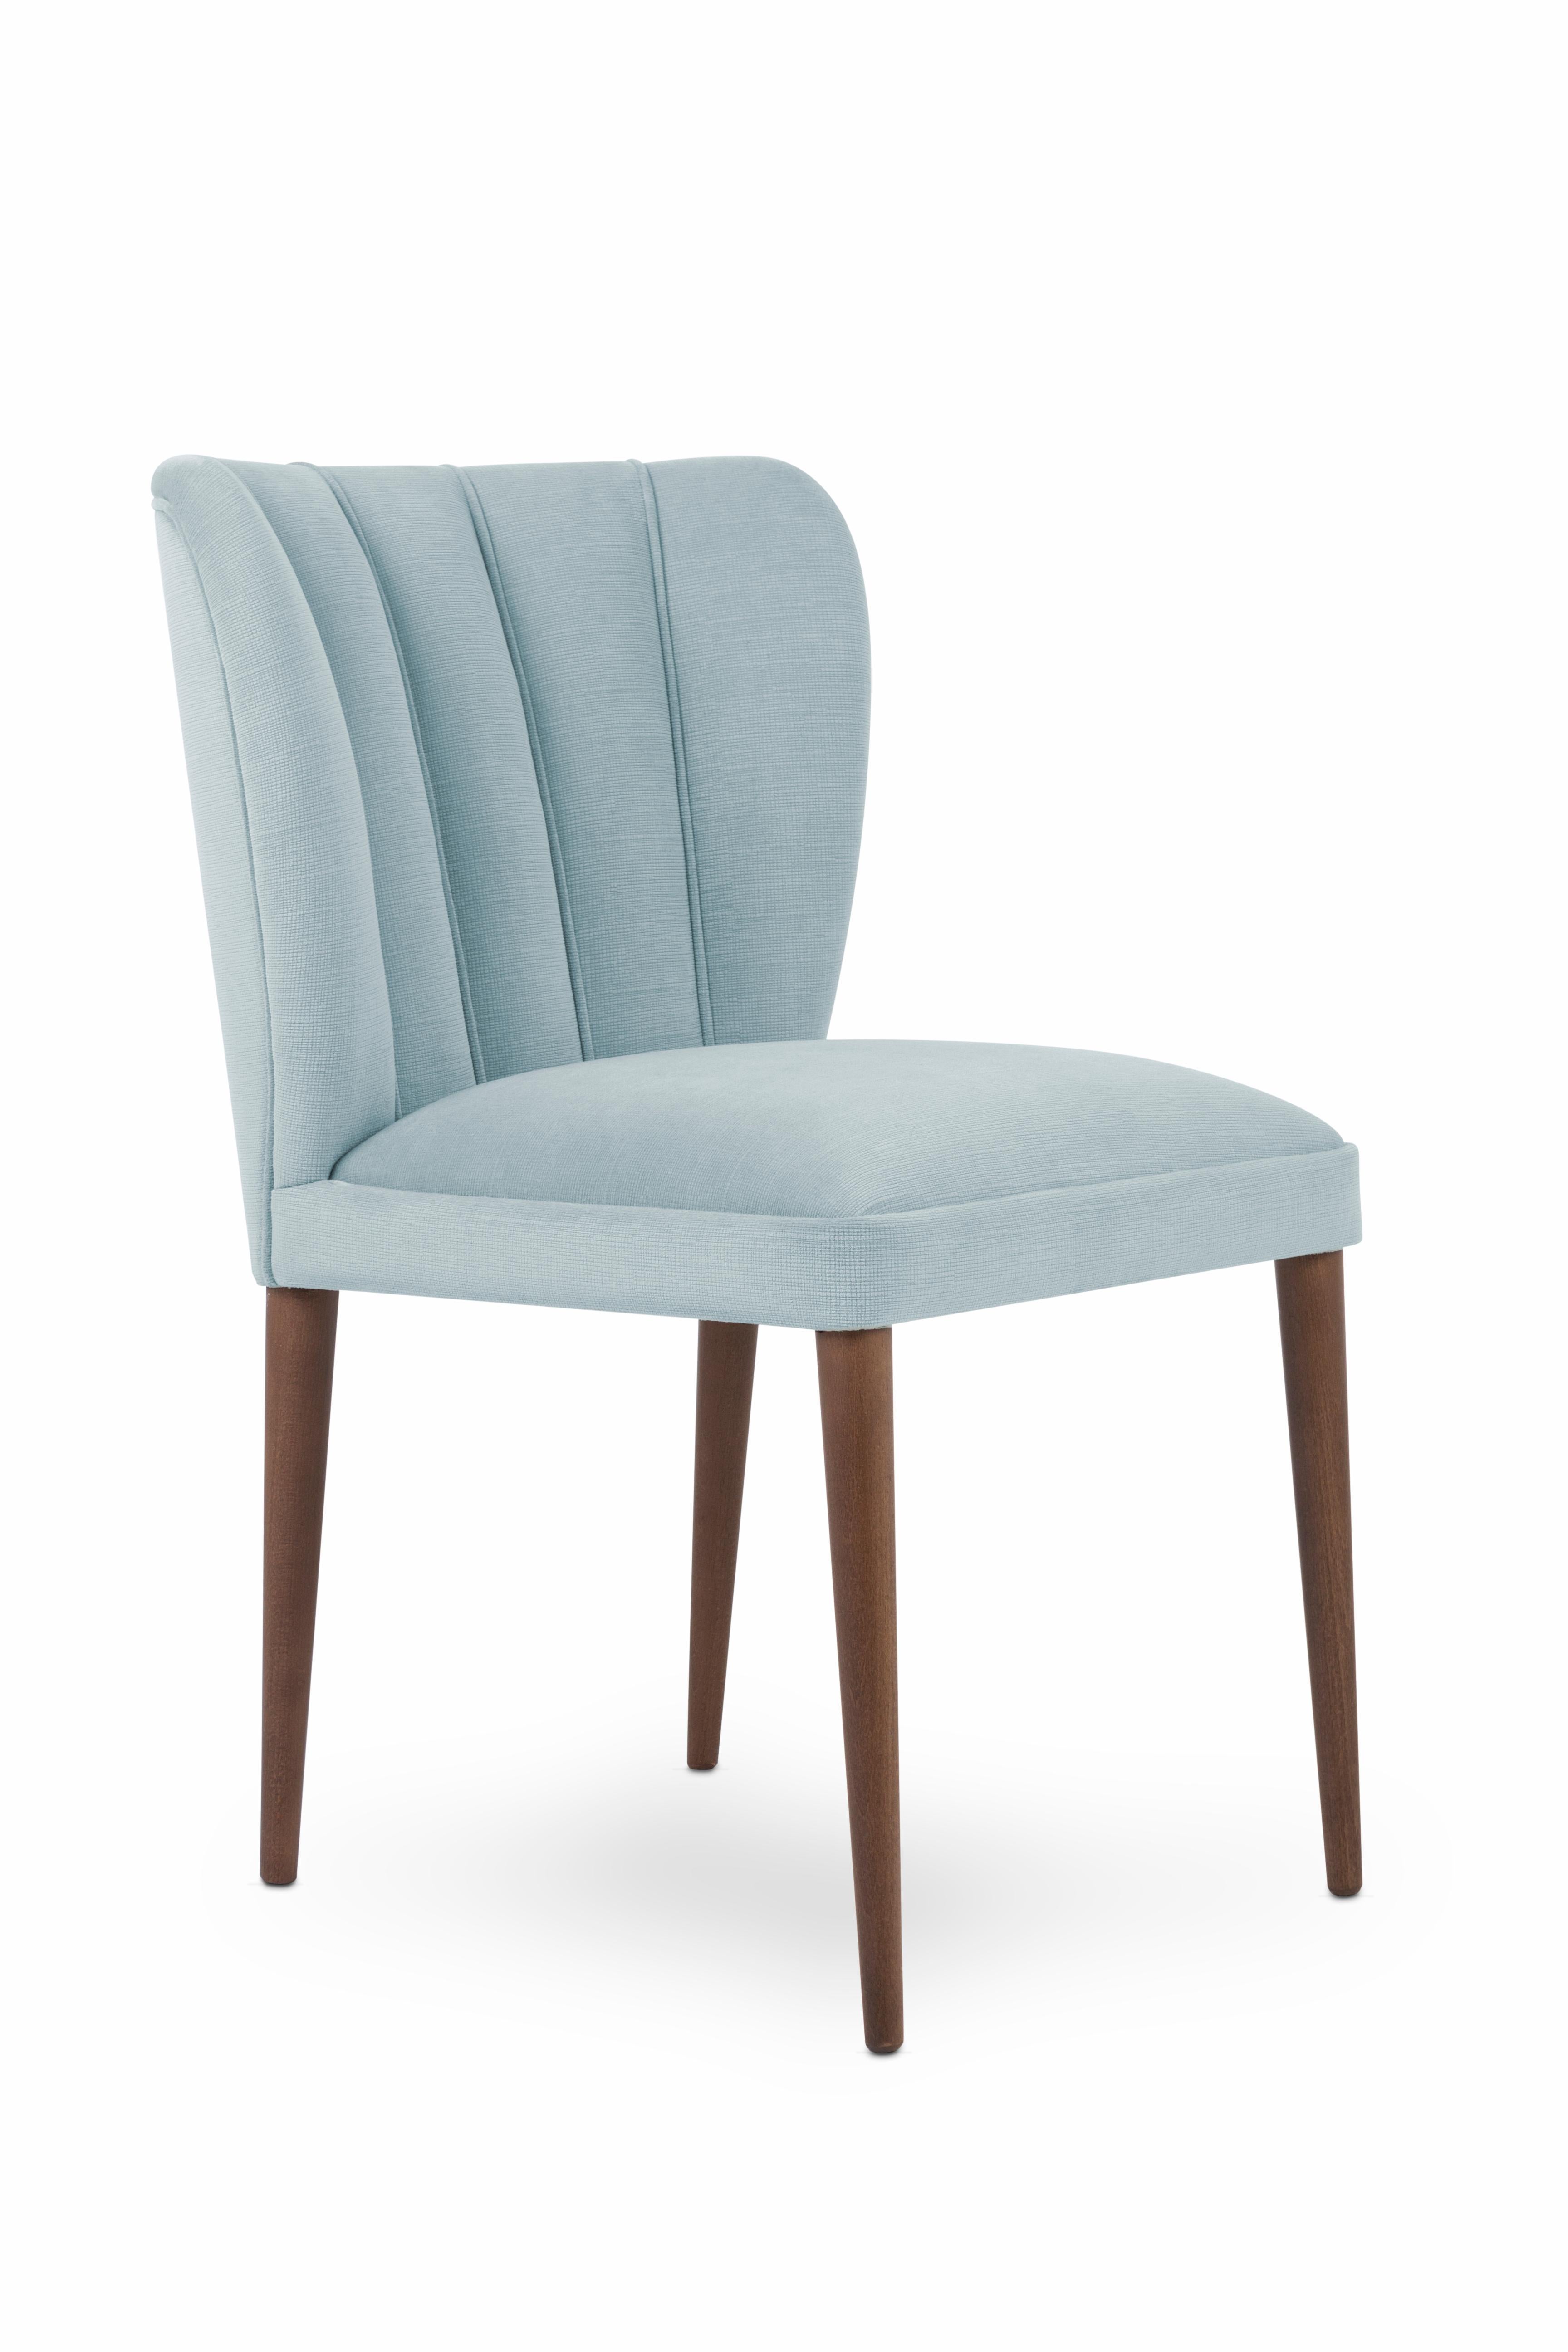 42kg Schaumstoff.

Mit seiner einzigartigen schalenförmigen Innenausstattung ist der Stuhl Agata die perfekte Kombination aus Komfort und Klasse!

Dieser zeitgenössische Stuhl mit Füßen aus Esche/Buche und gebeizter Oberfläche ist eine charmante